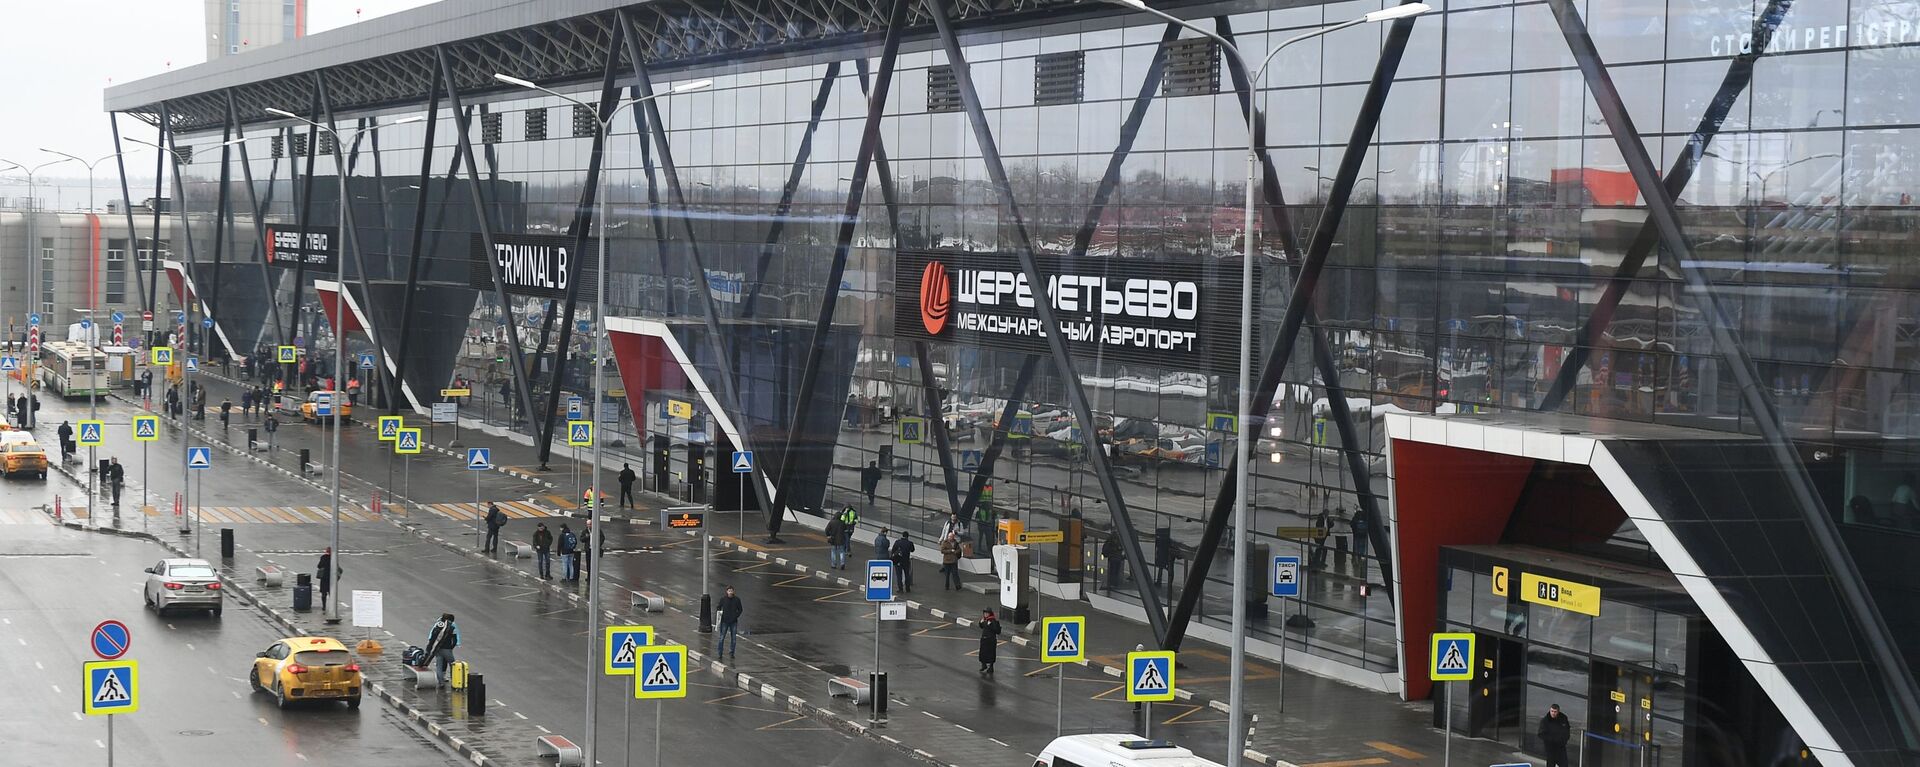 Вида на терминал B международного аэропорта Шереметьево в Москве - Sputnik Грузия, 1920, 02.06.2021